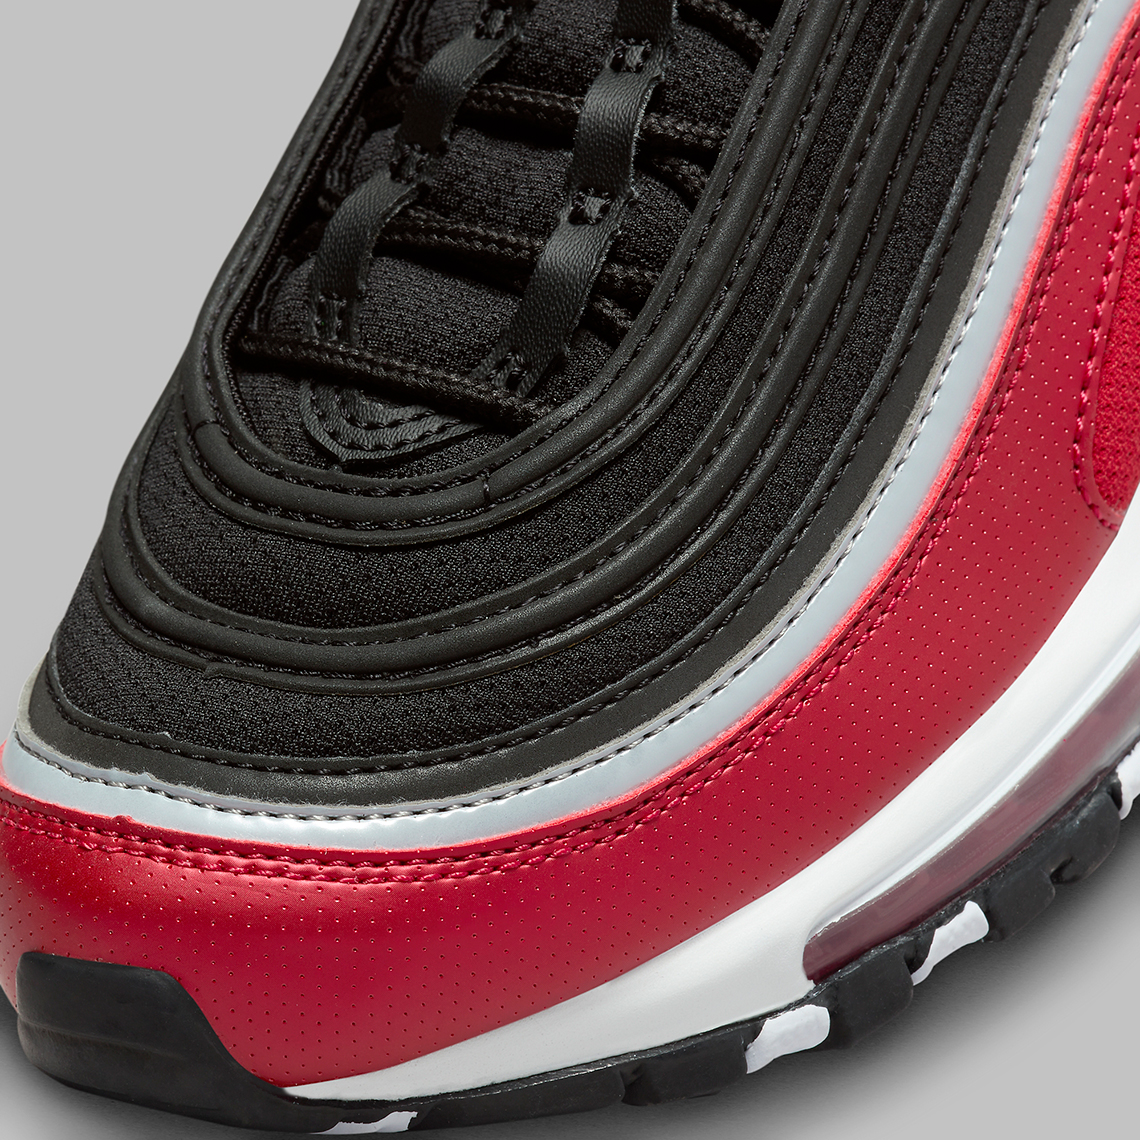 Nike Air Max 97 Gs Red Black Grey Fb3245 001 6